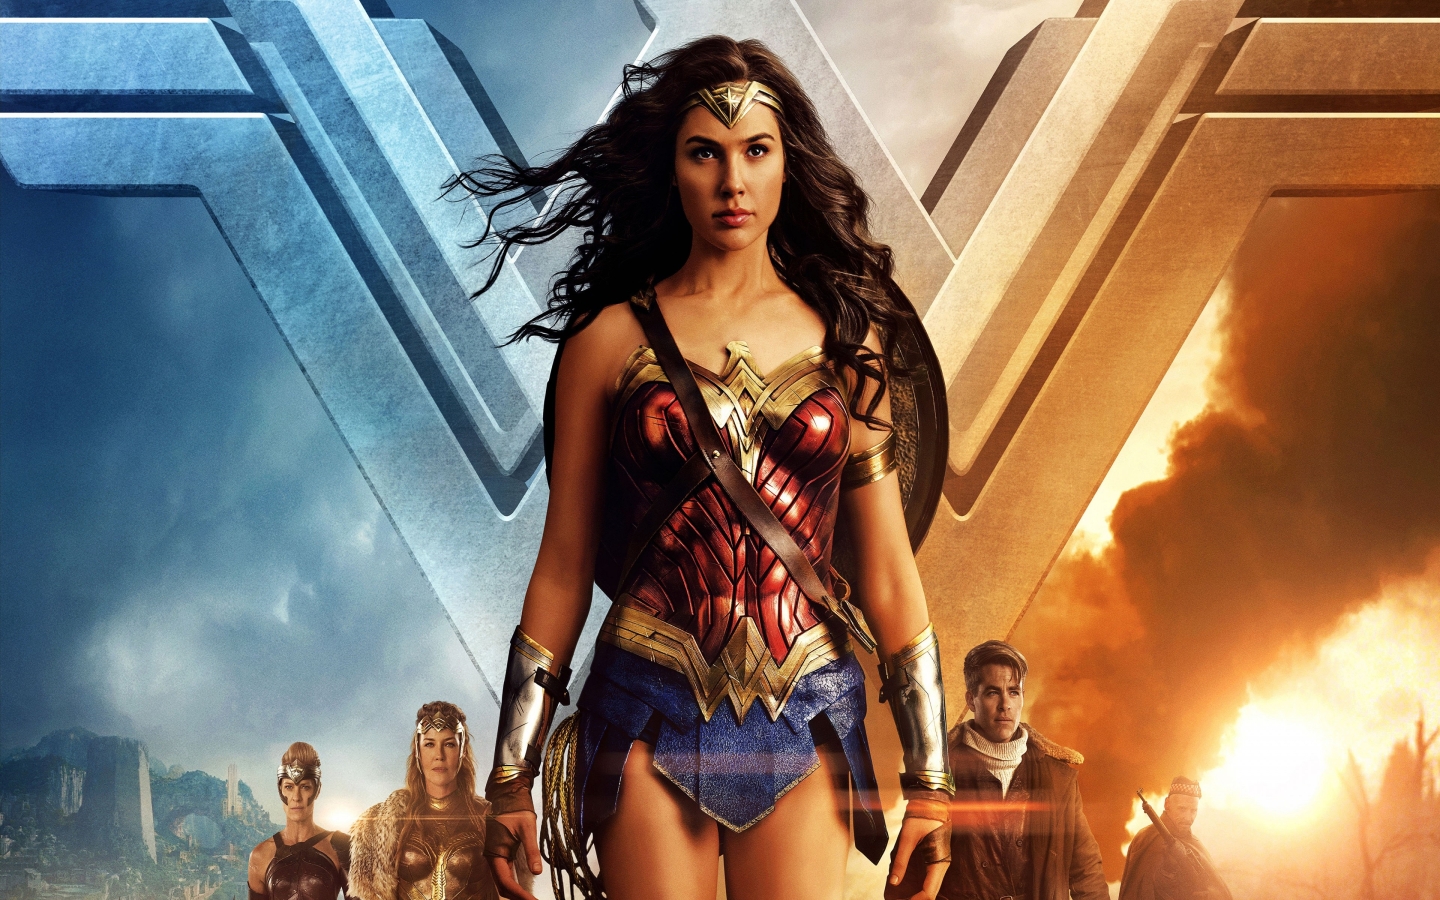 Wonder Woman Gal Gadot 2017 for 1440 x 900 widescreen resolution